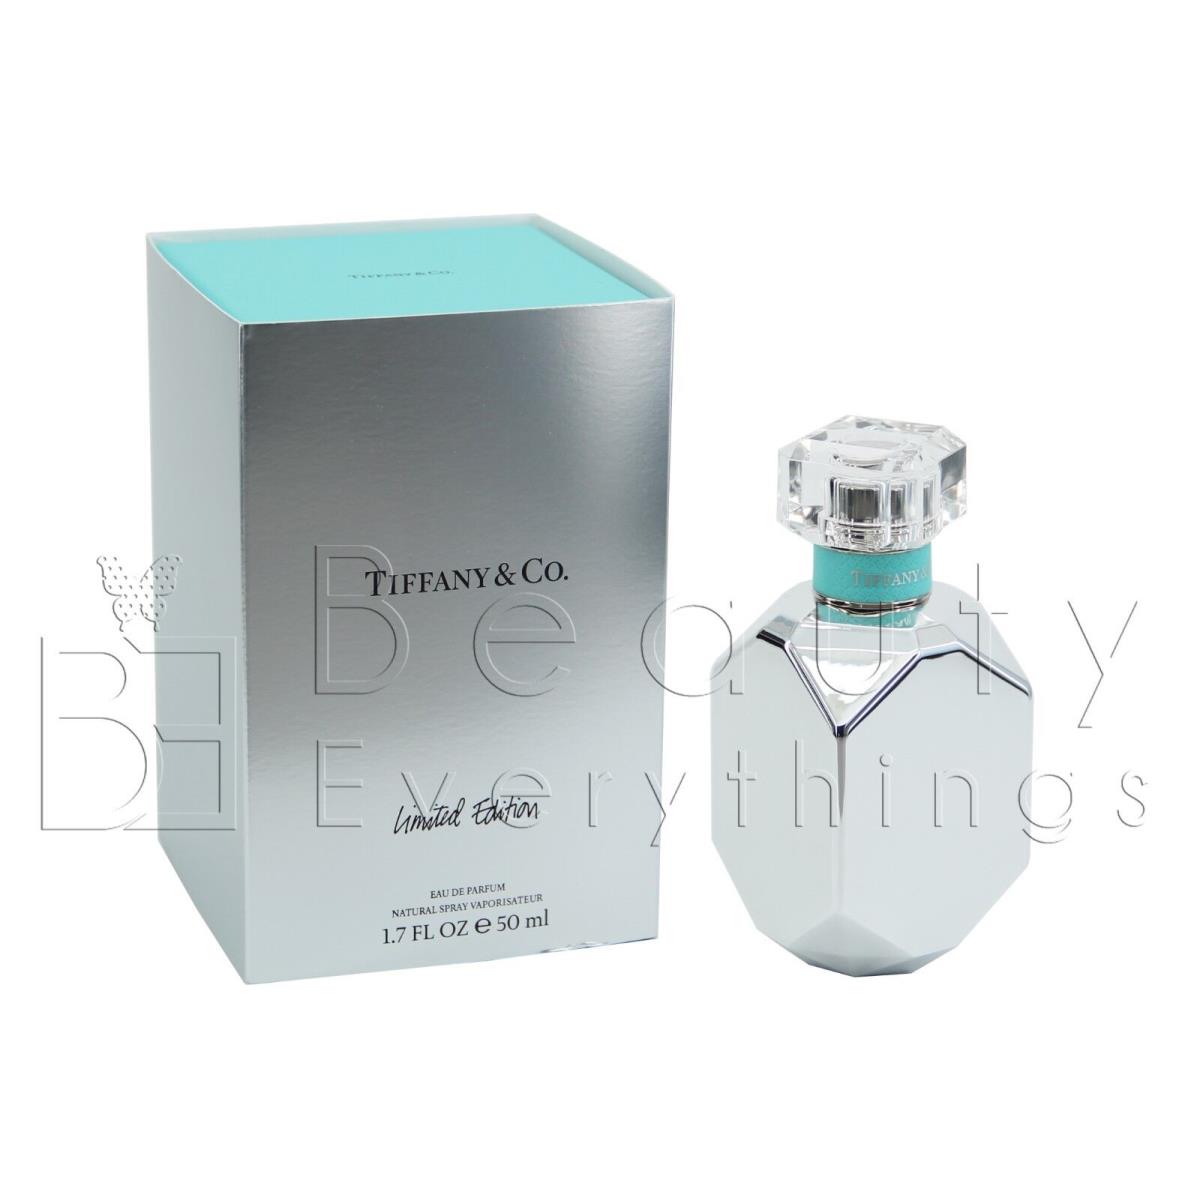 Tiffany Limited Edition by Tiffany Co. 1.7oz Edp Spray For Women